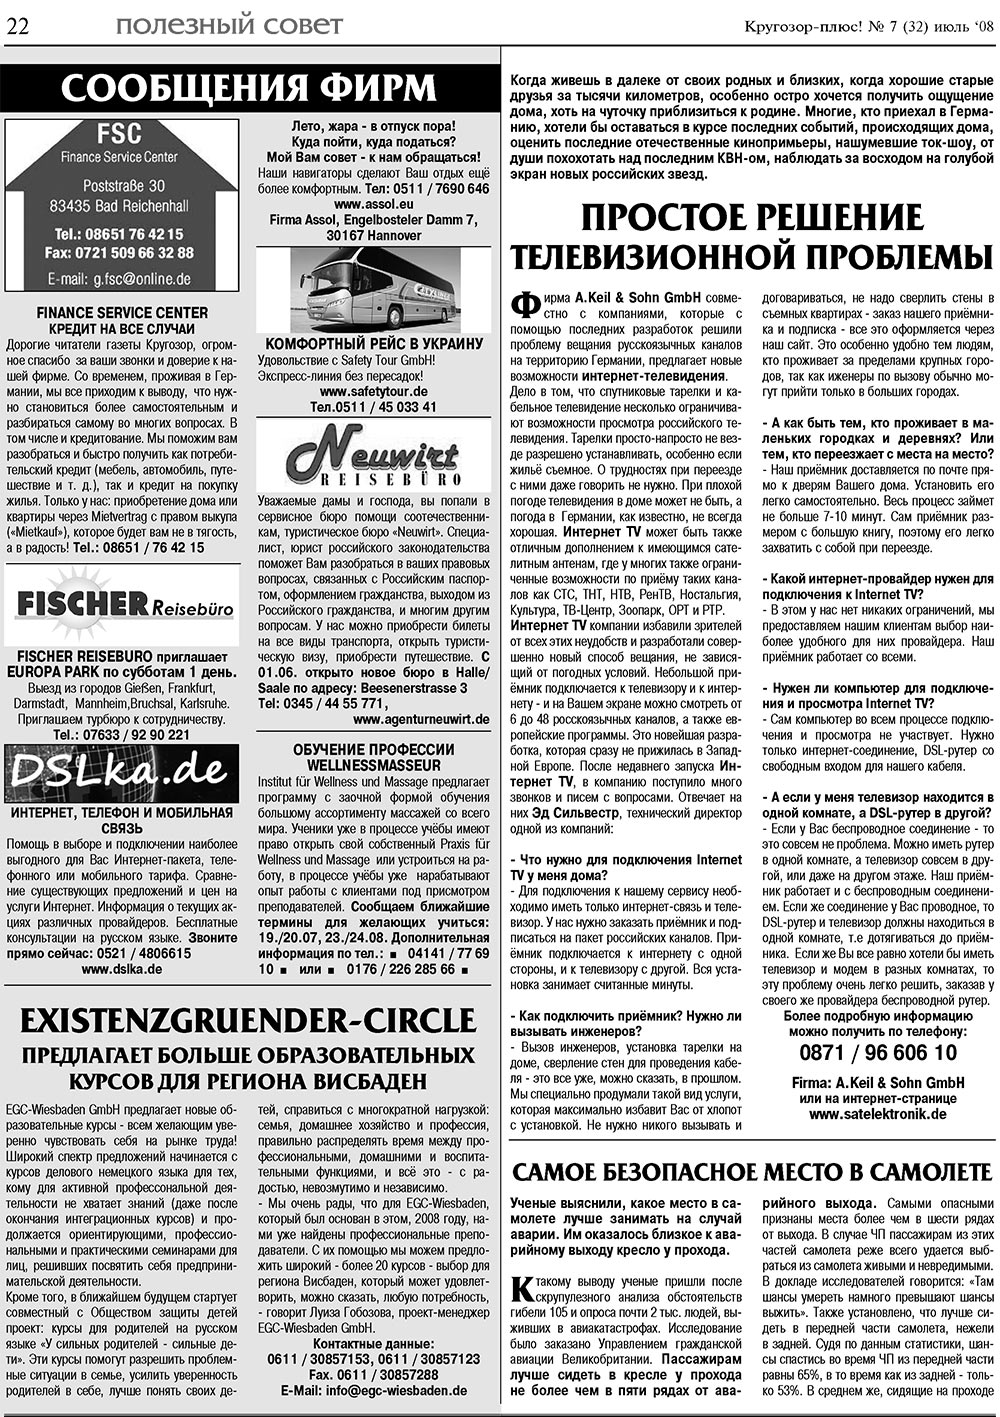 Кругозор плюс!, газета. 2008 №7 стр.22